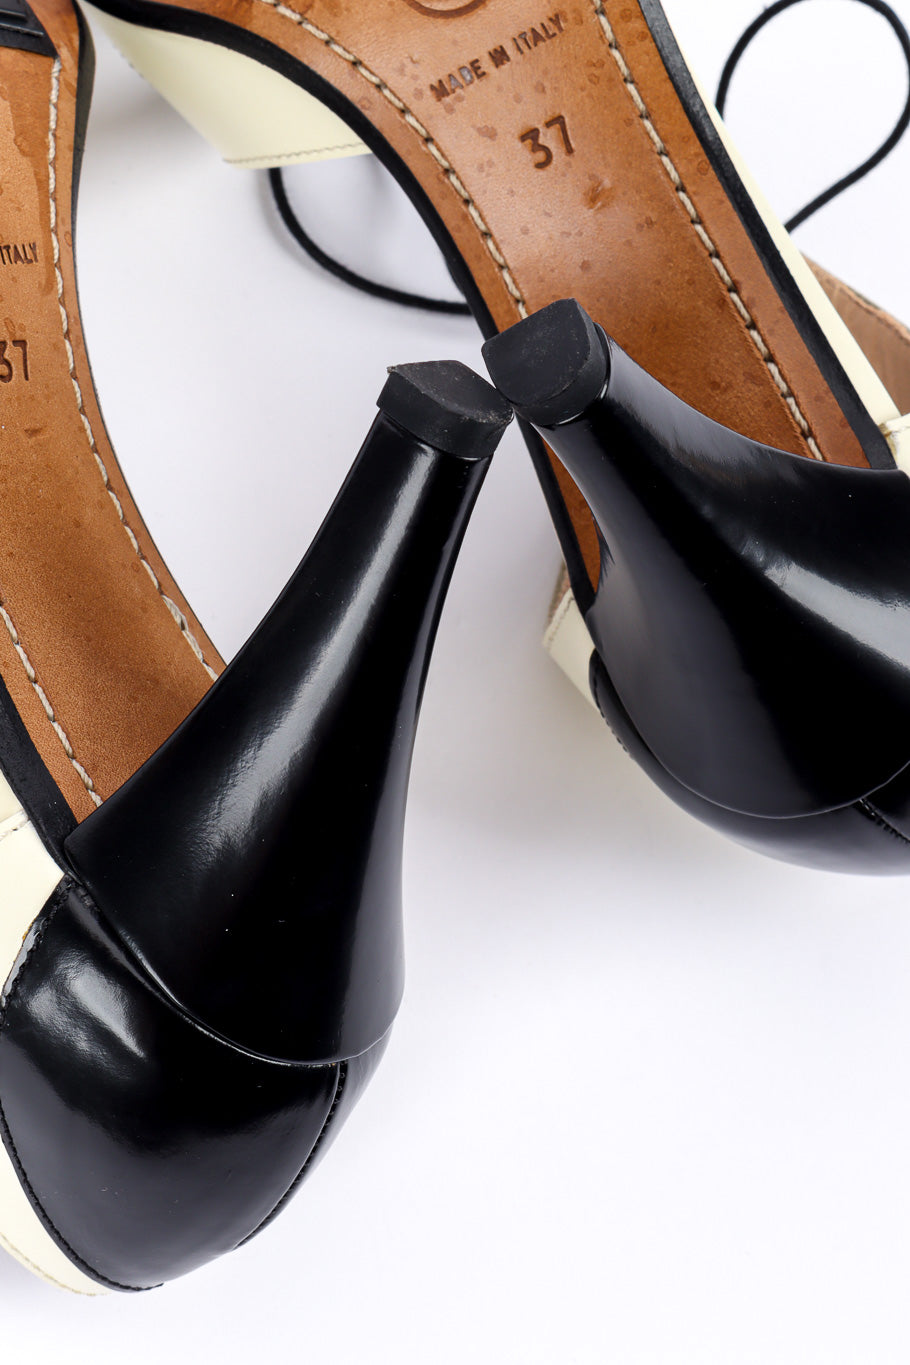 Vintage Chanel Lace Up Heels bottom heel closeup @recessla